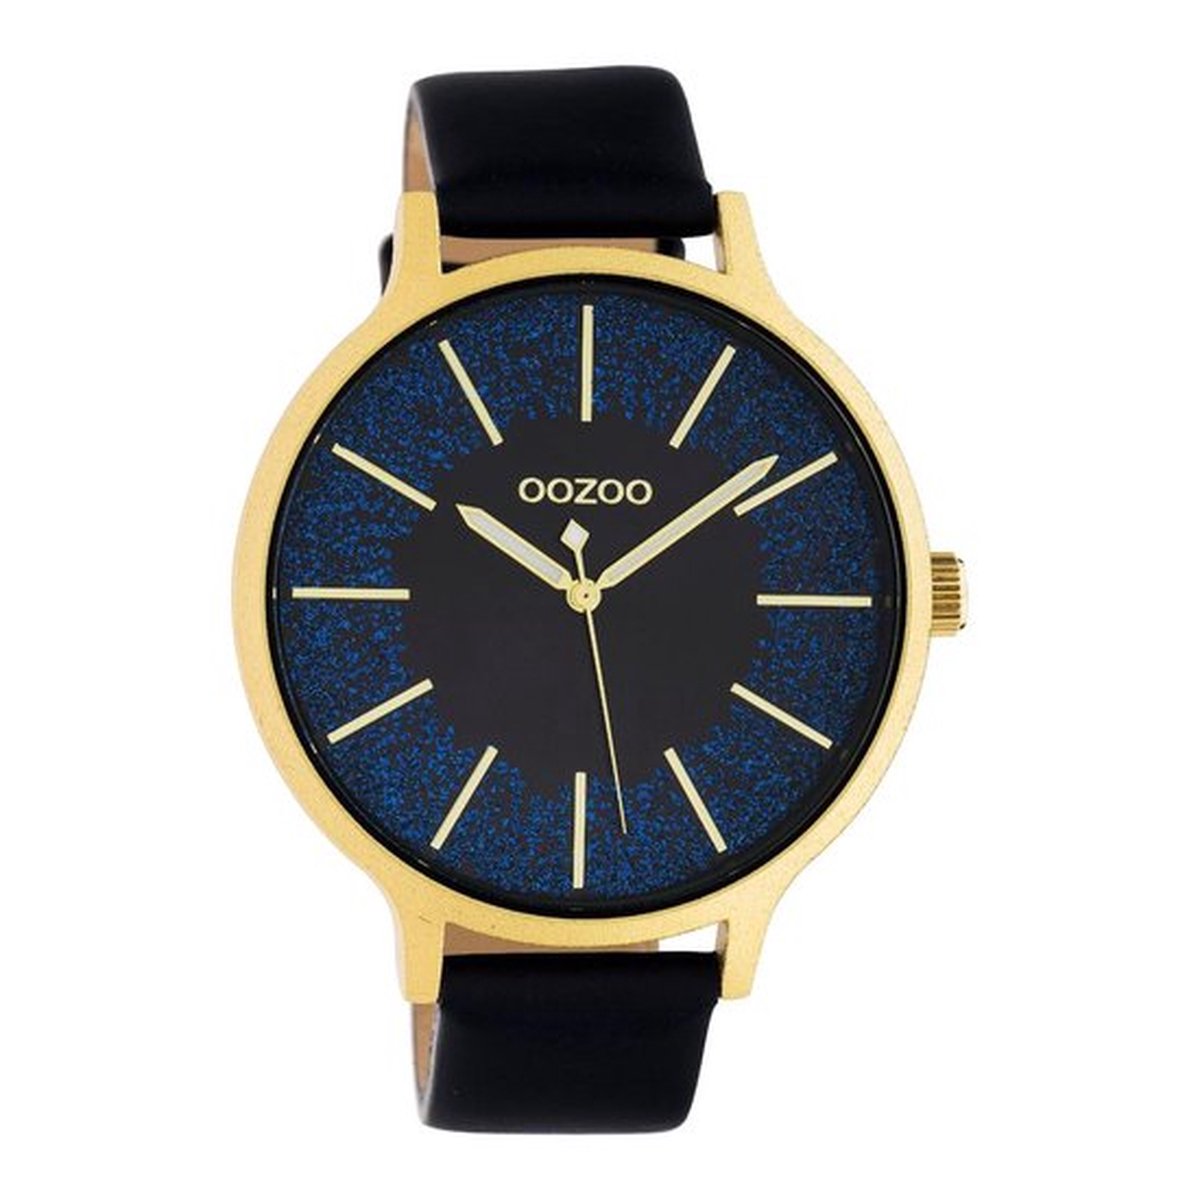 OOZOO Timepieces - goudkleurige horloge met donker blauwe leren band - C10568 - Ø45